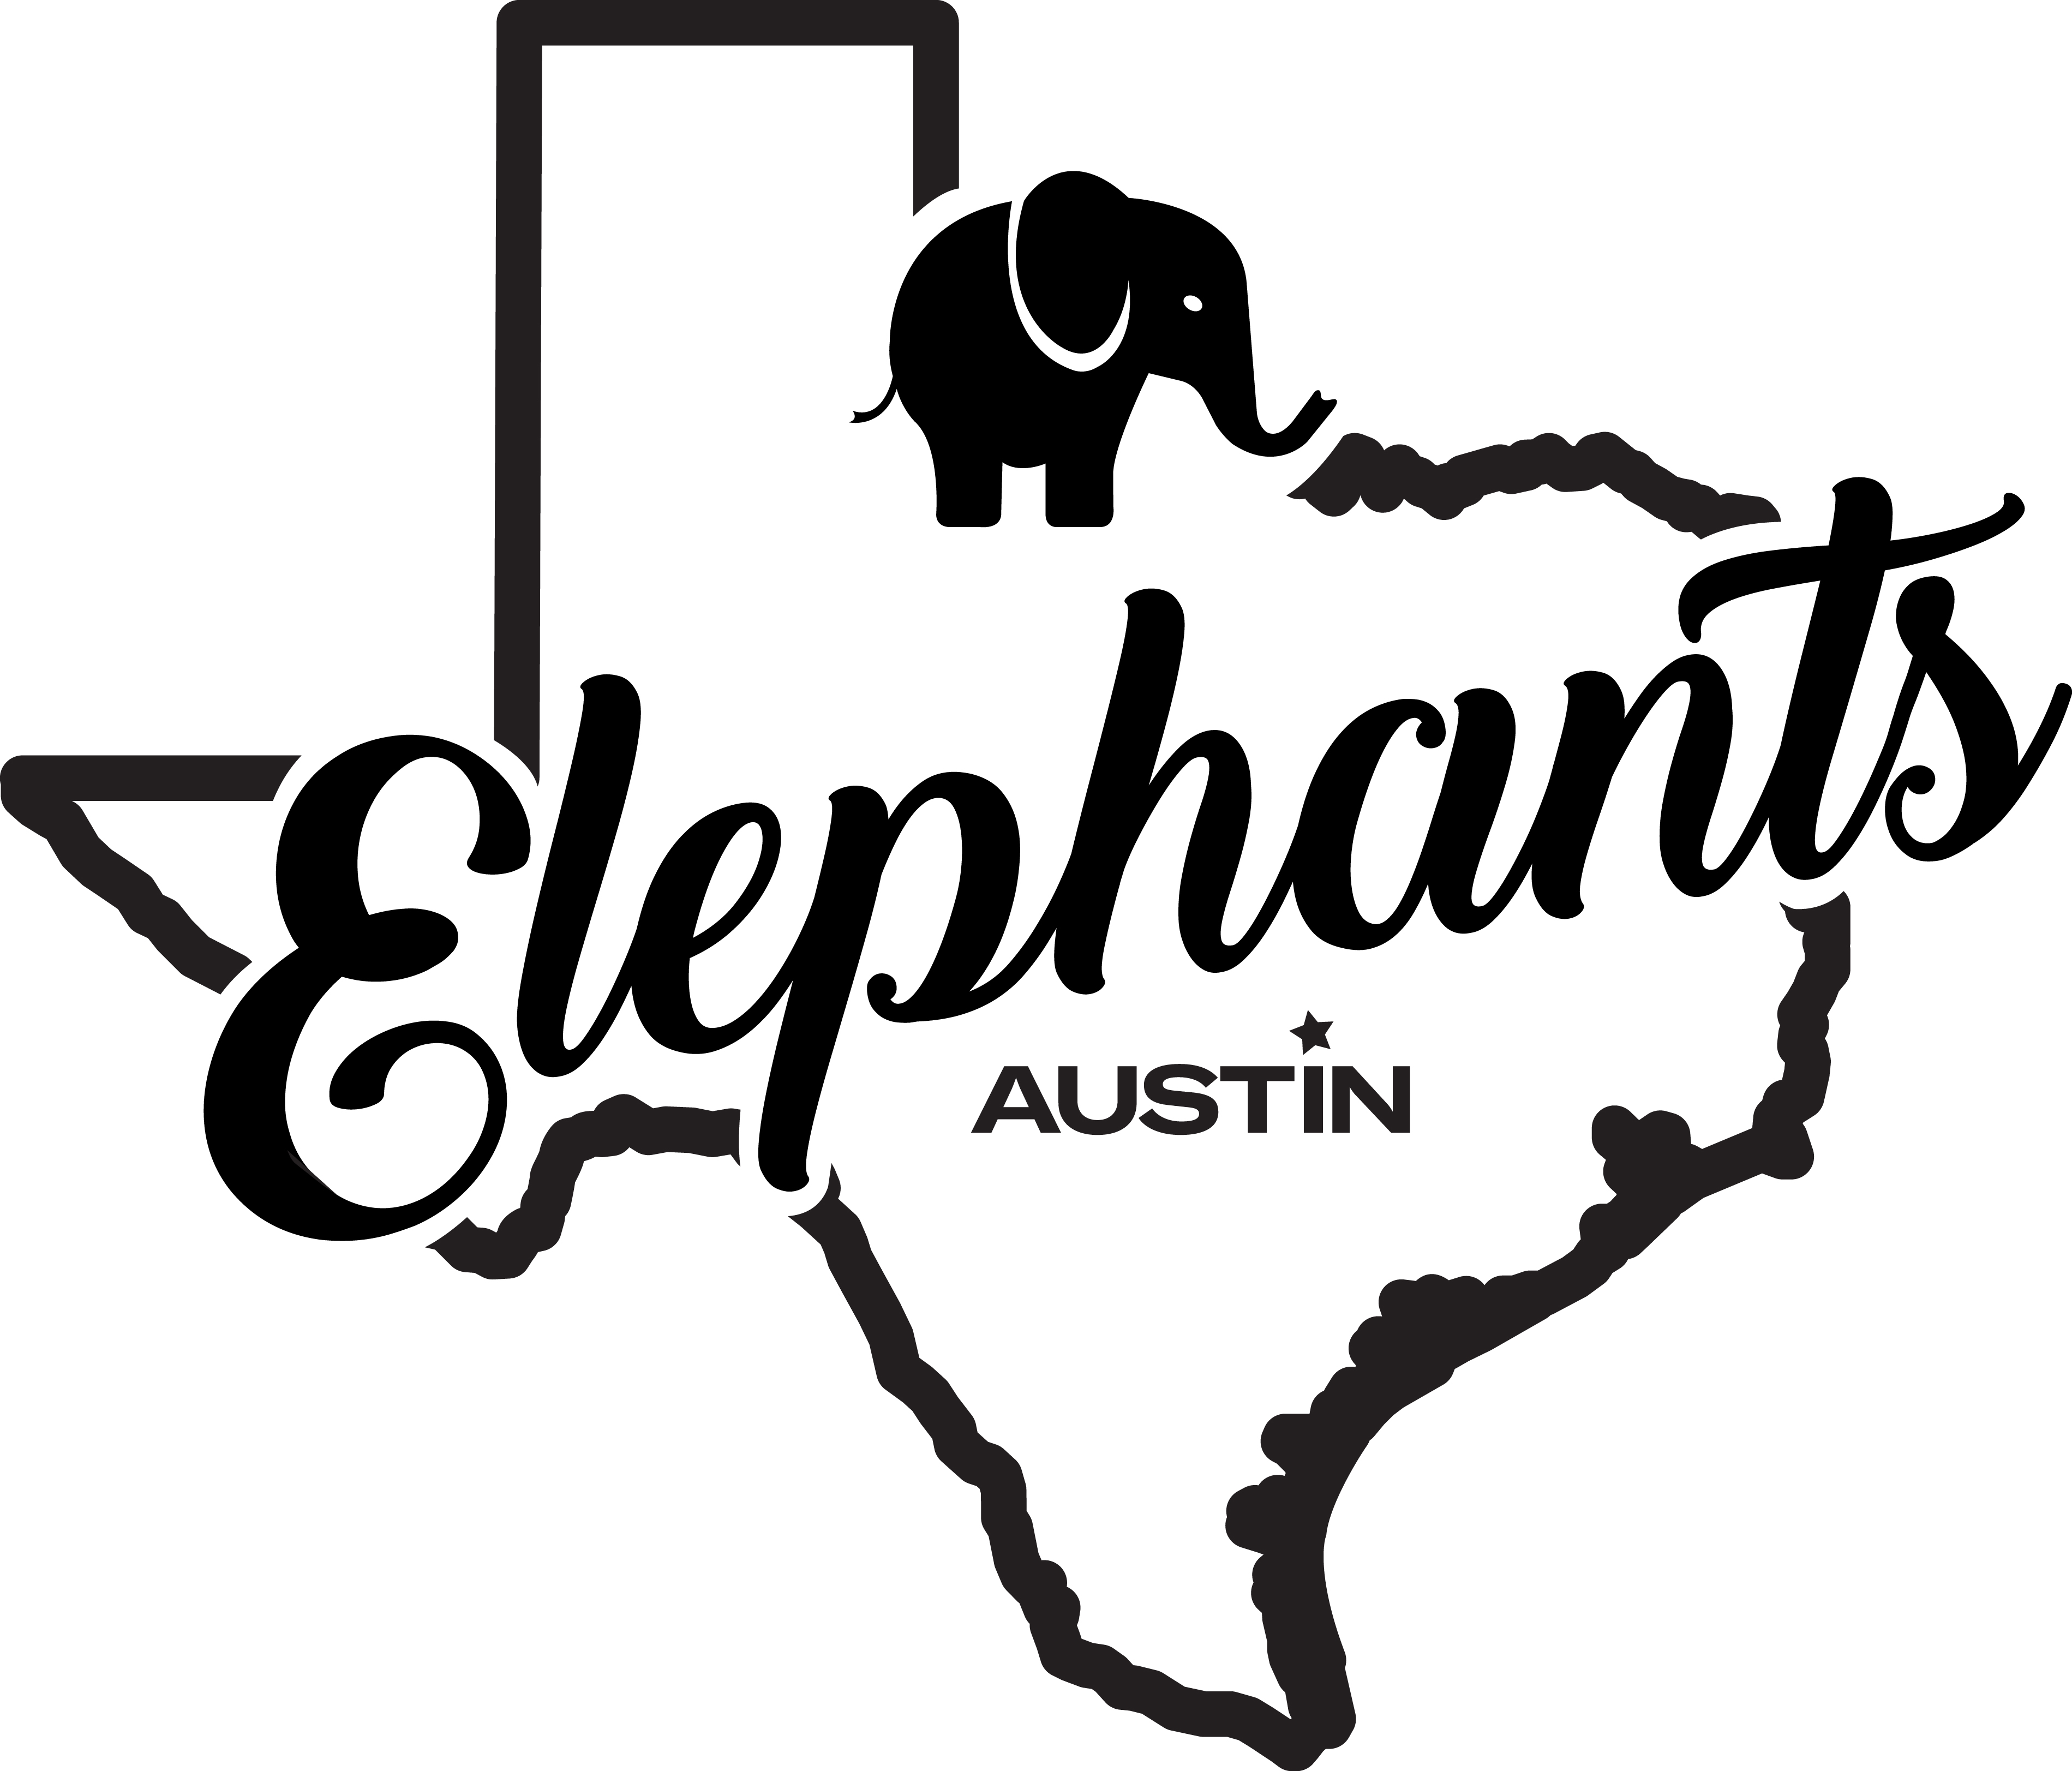 Elephants Austin logo